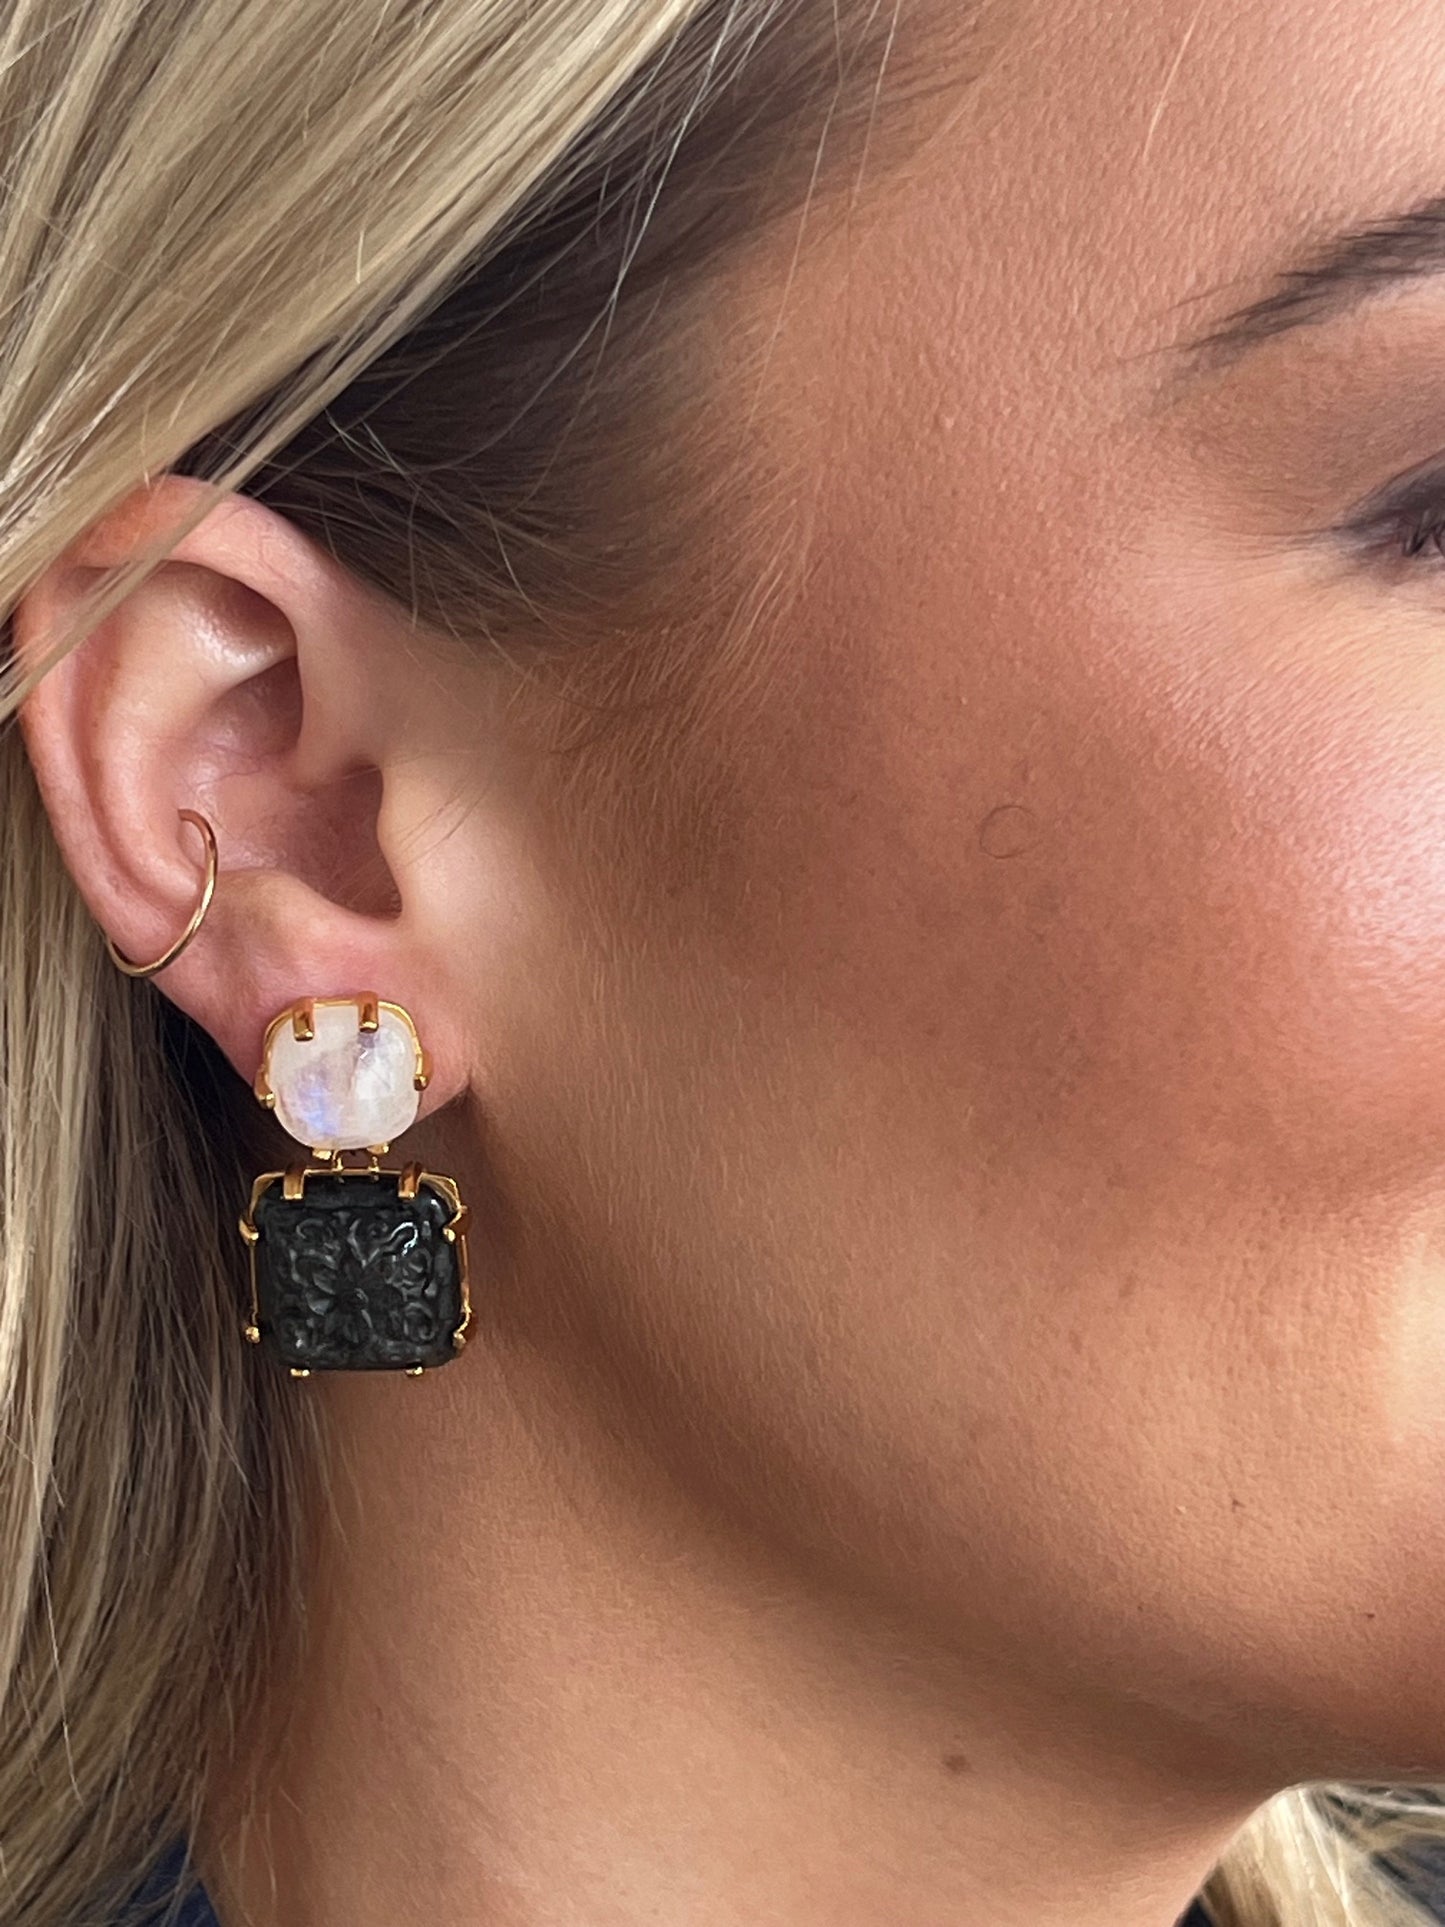 Moonstone & Carved Golden Obsidian Earrings